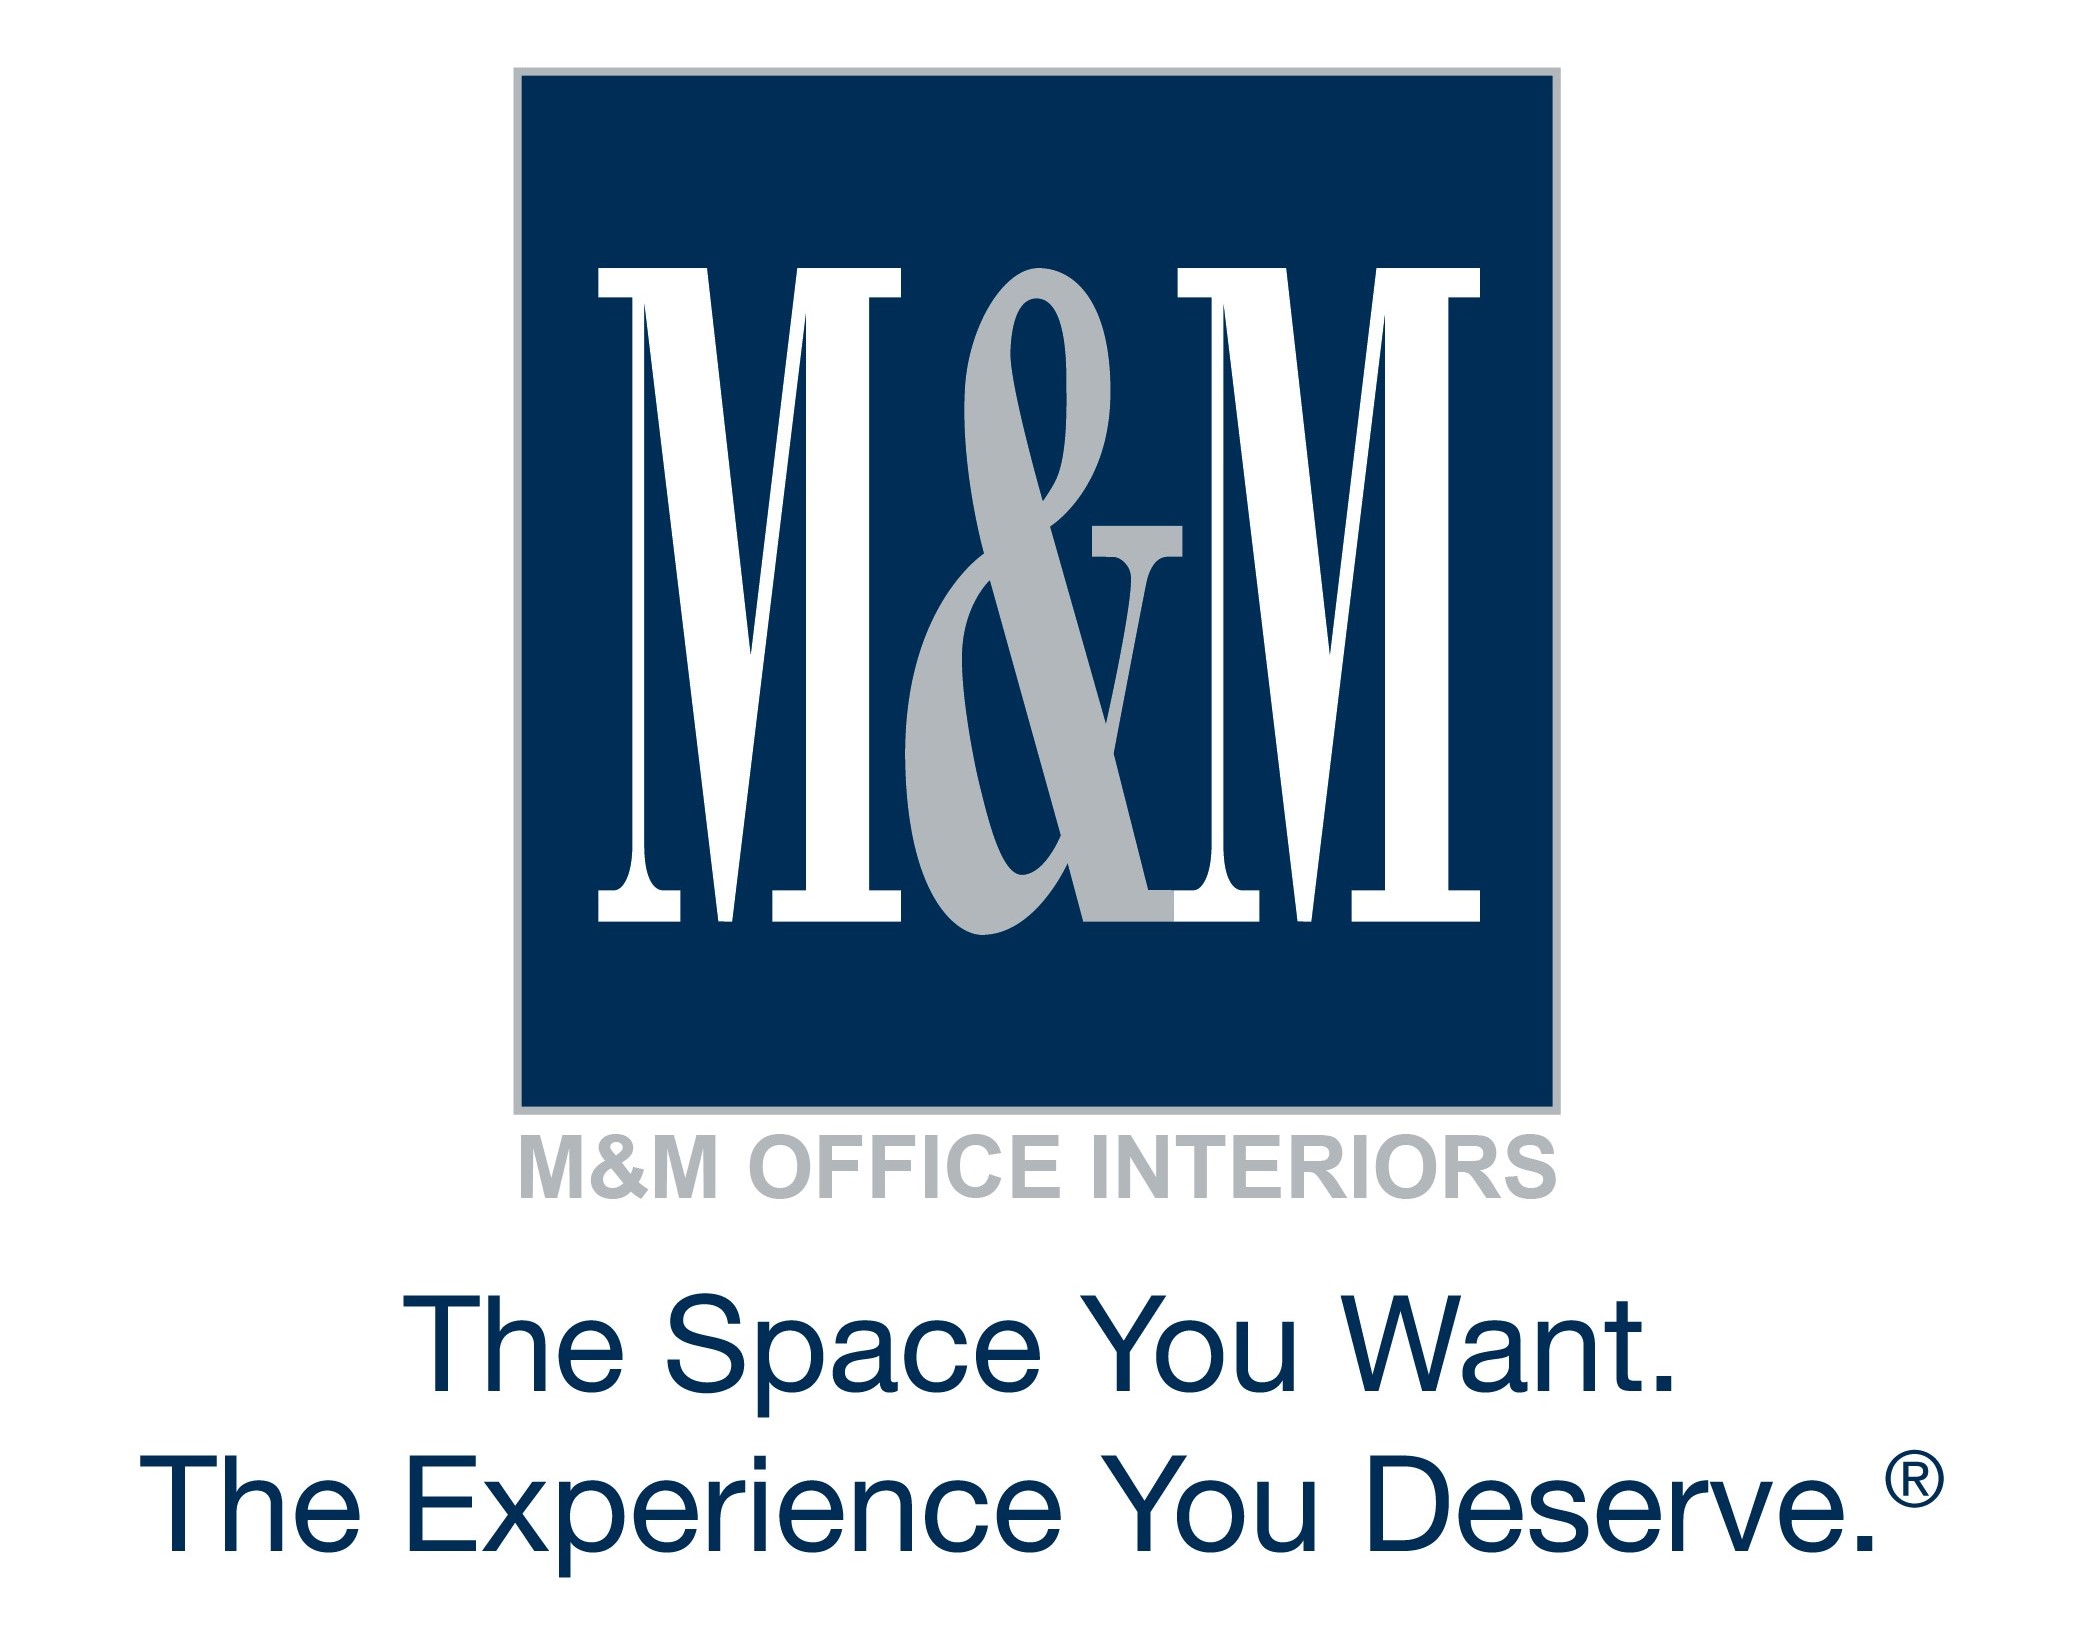 M&M Office Interiors